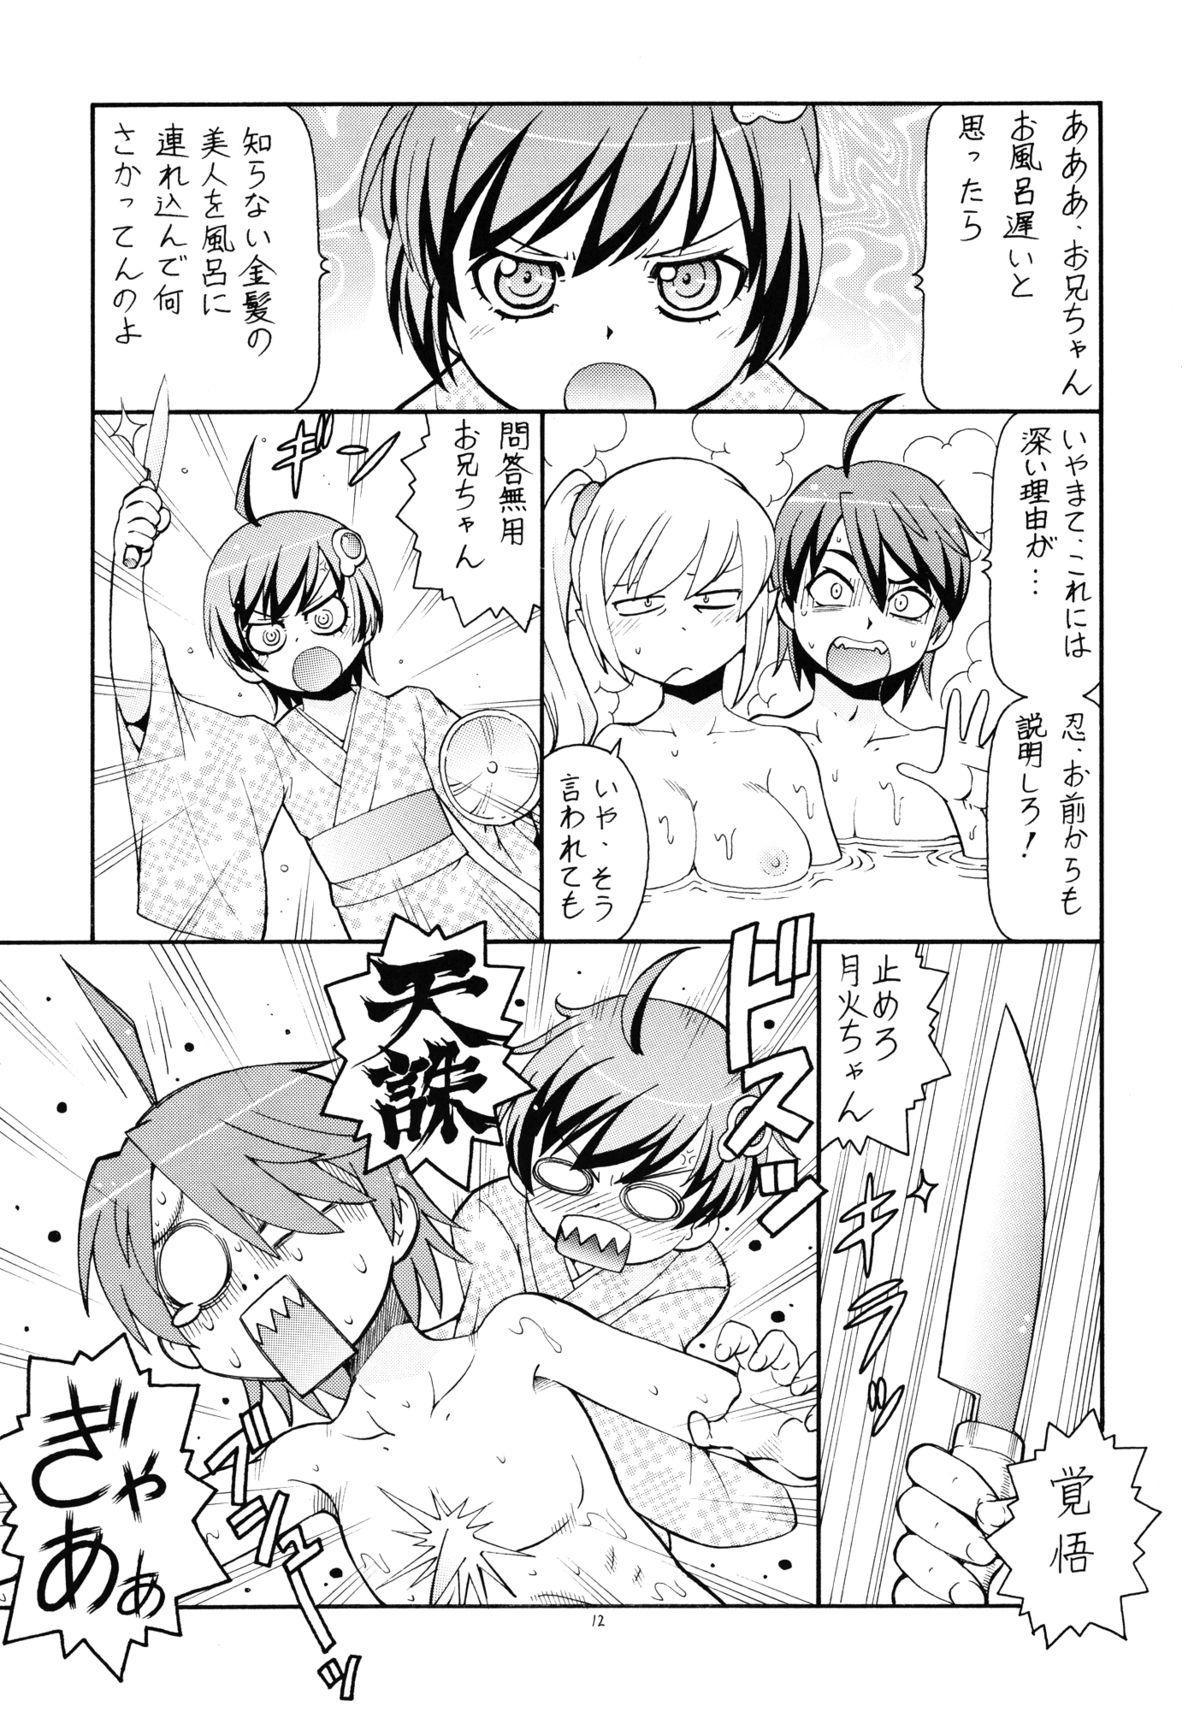 Pija Hito ni Hakanai to Kaite "Araragi" to Yomu 5&6 - Bakemonogatari Transex - Page 13